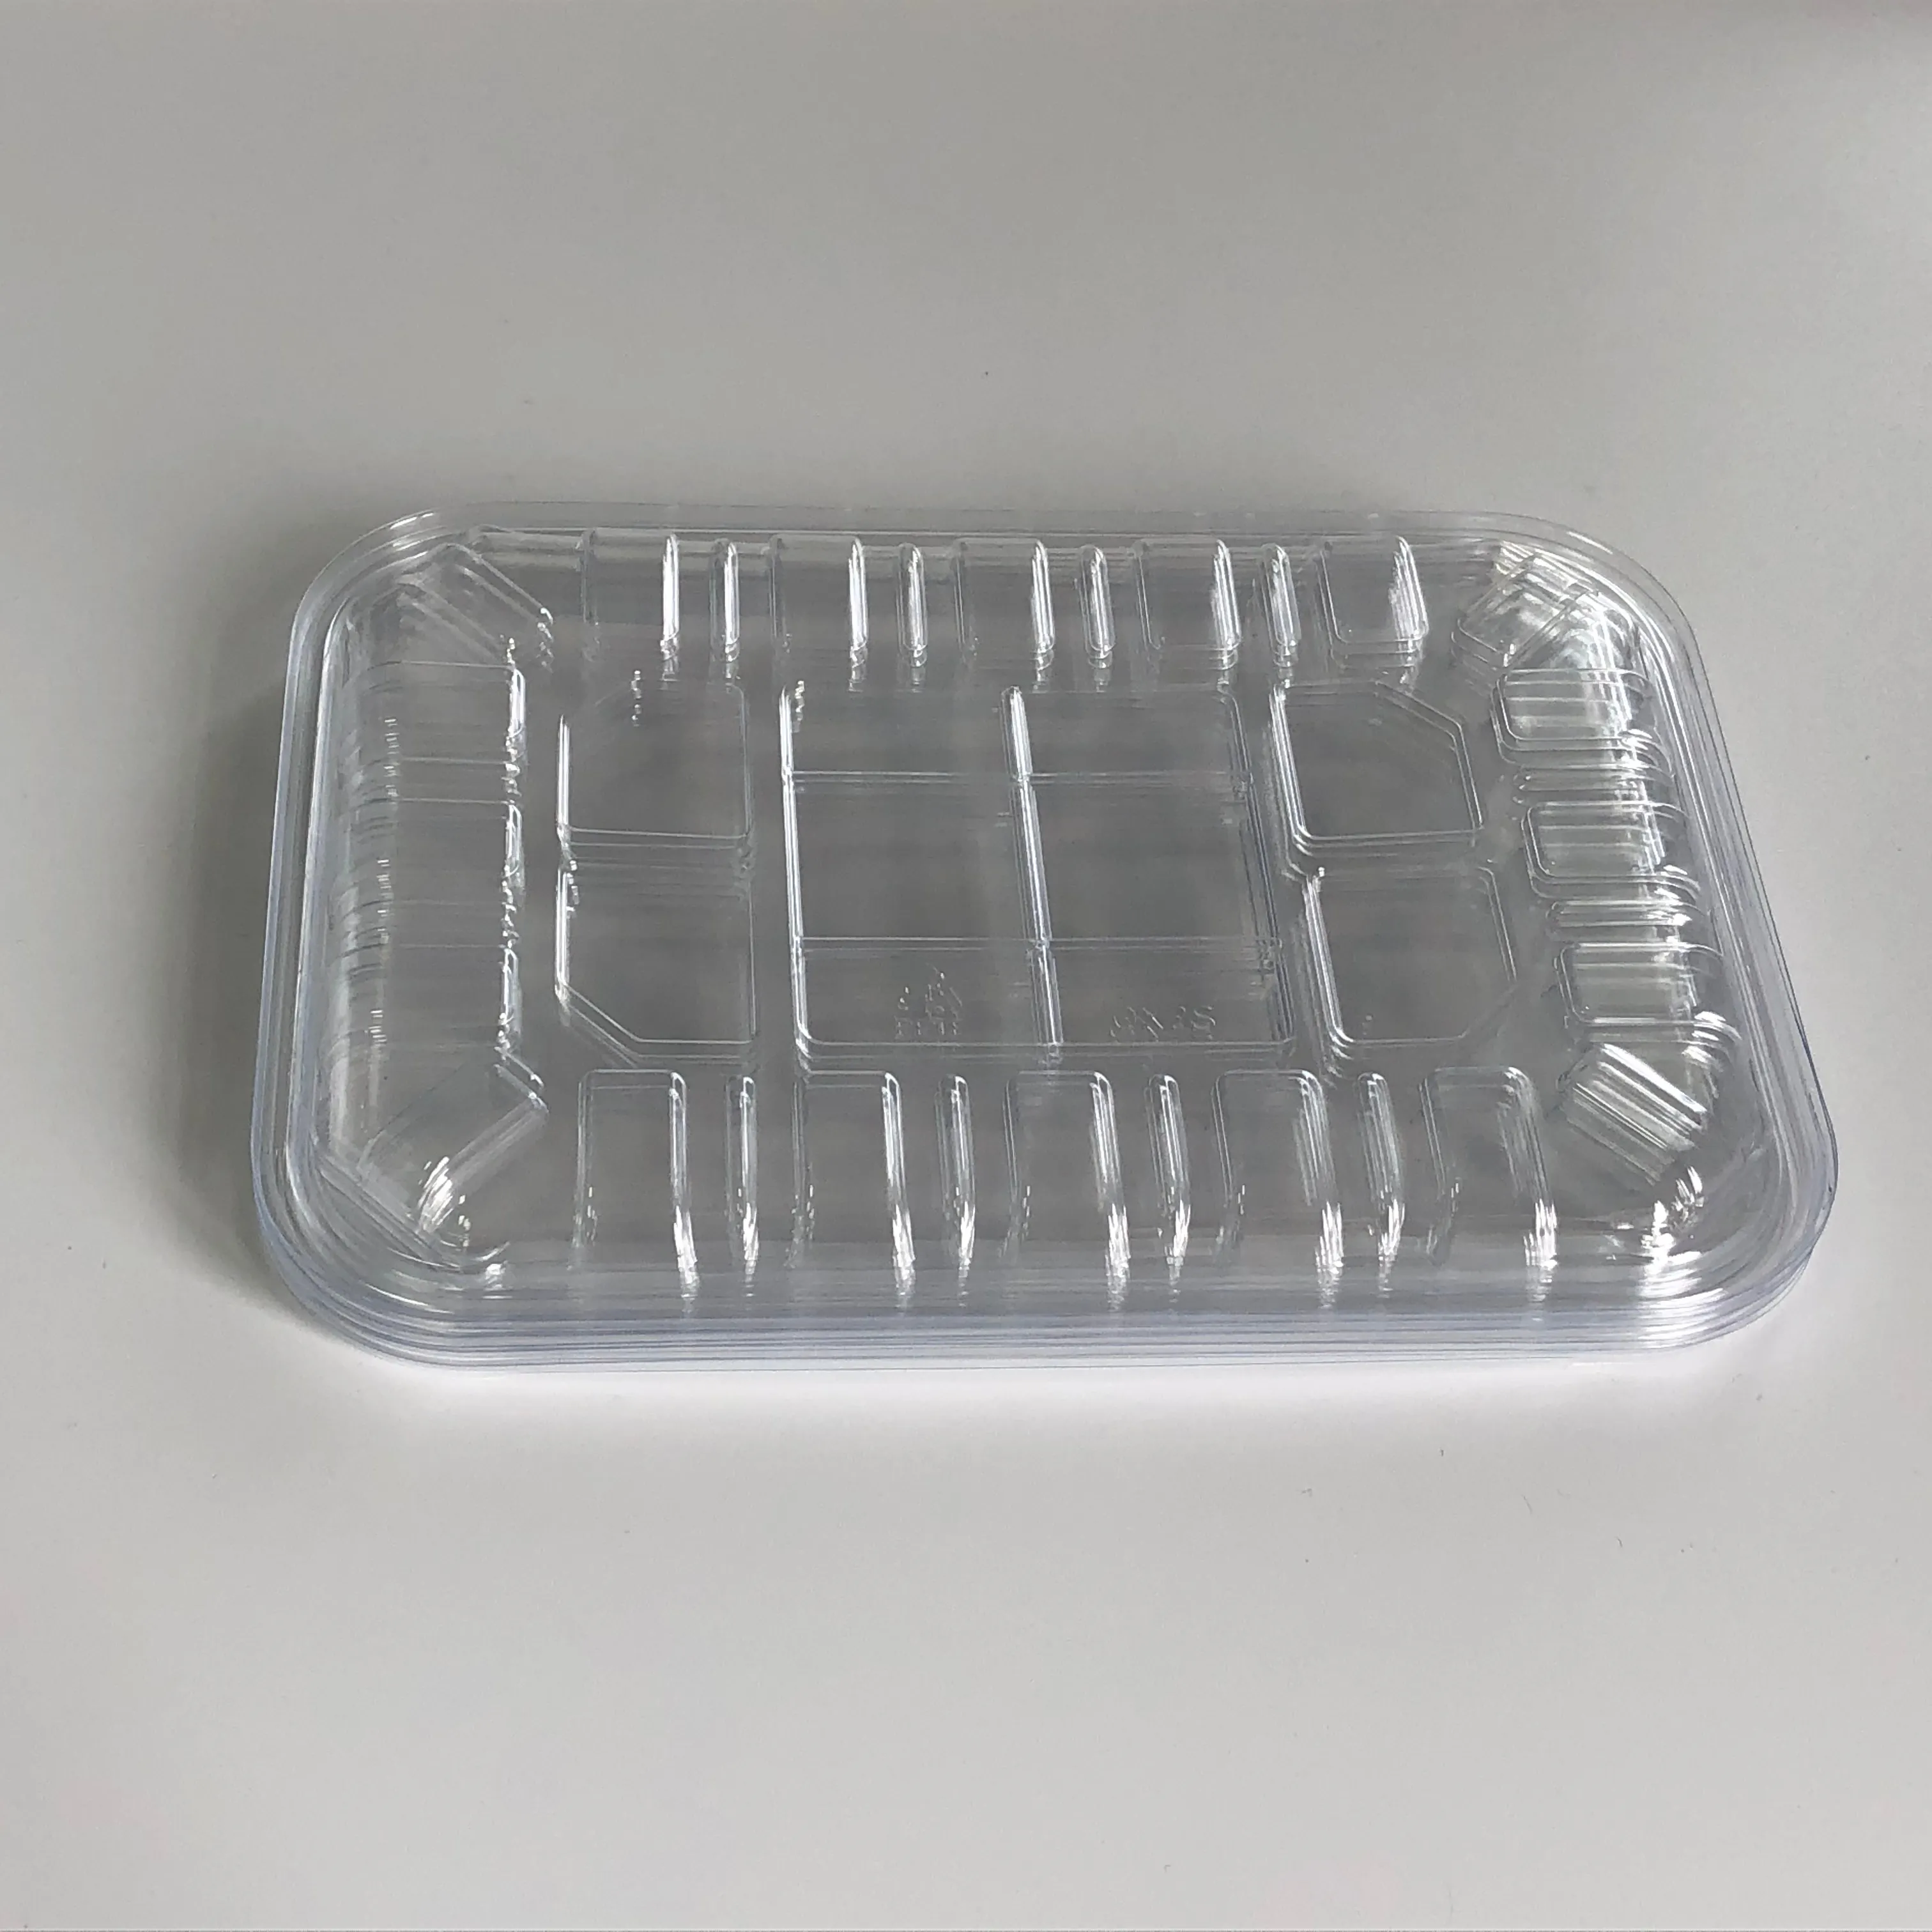 Plastik ambalaj meyve sebze balık et tepsisi Cpet yiyecek tepsisi sızdırmazlık ev mutfak kullanımı 2S tepsi